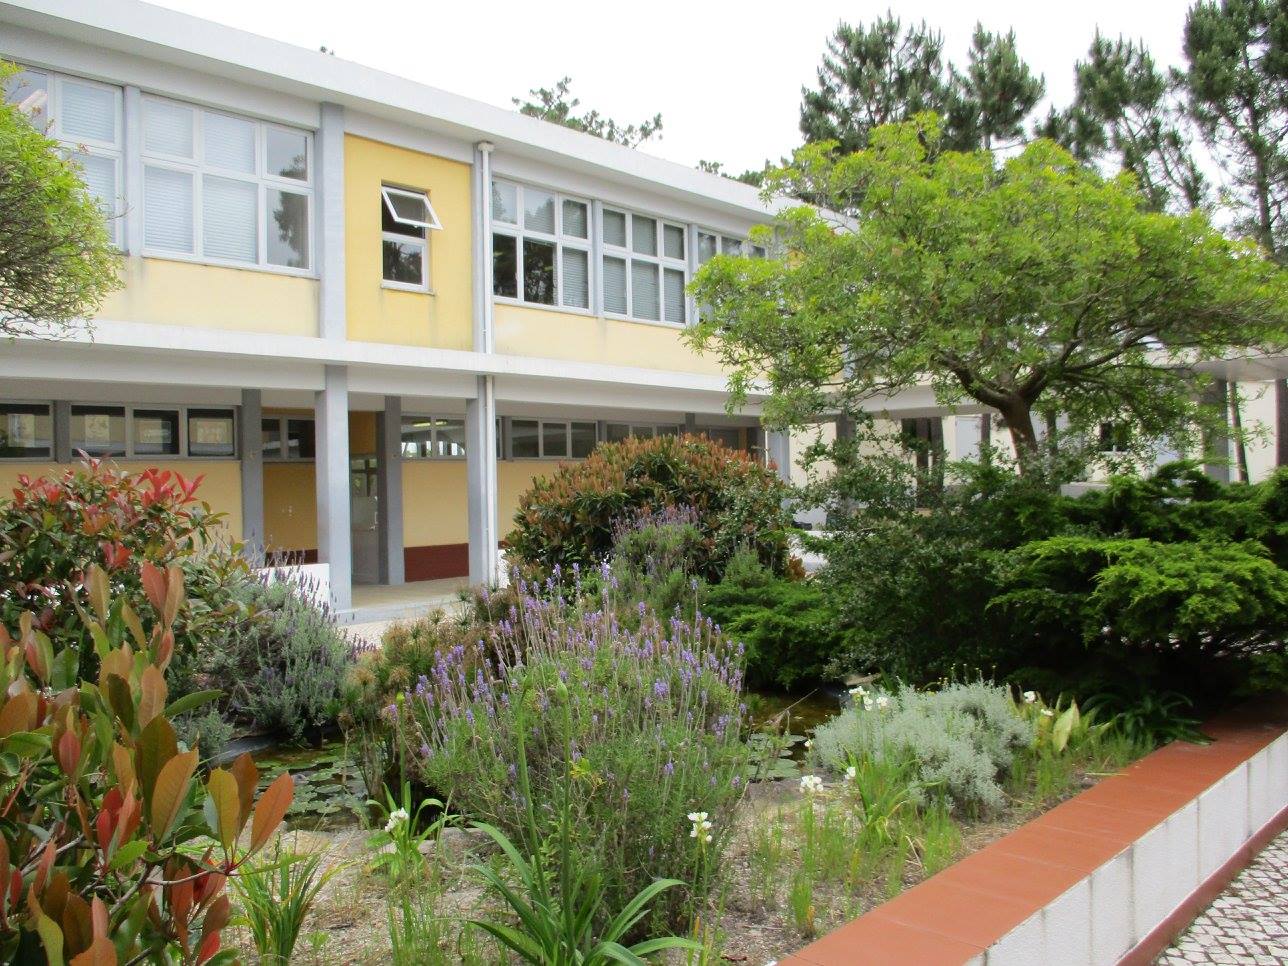 Memotivasi Siswa: Studi Kasus Sekolah ClassPoint dengan Escola Profissional de Penafirme di Torres Vedras, Portugal